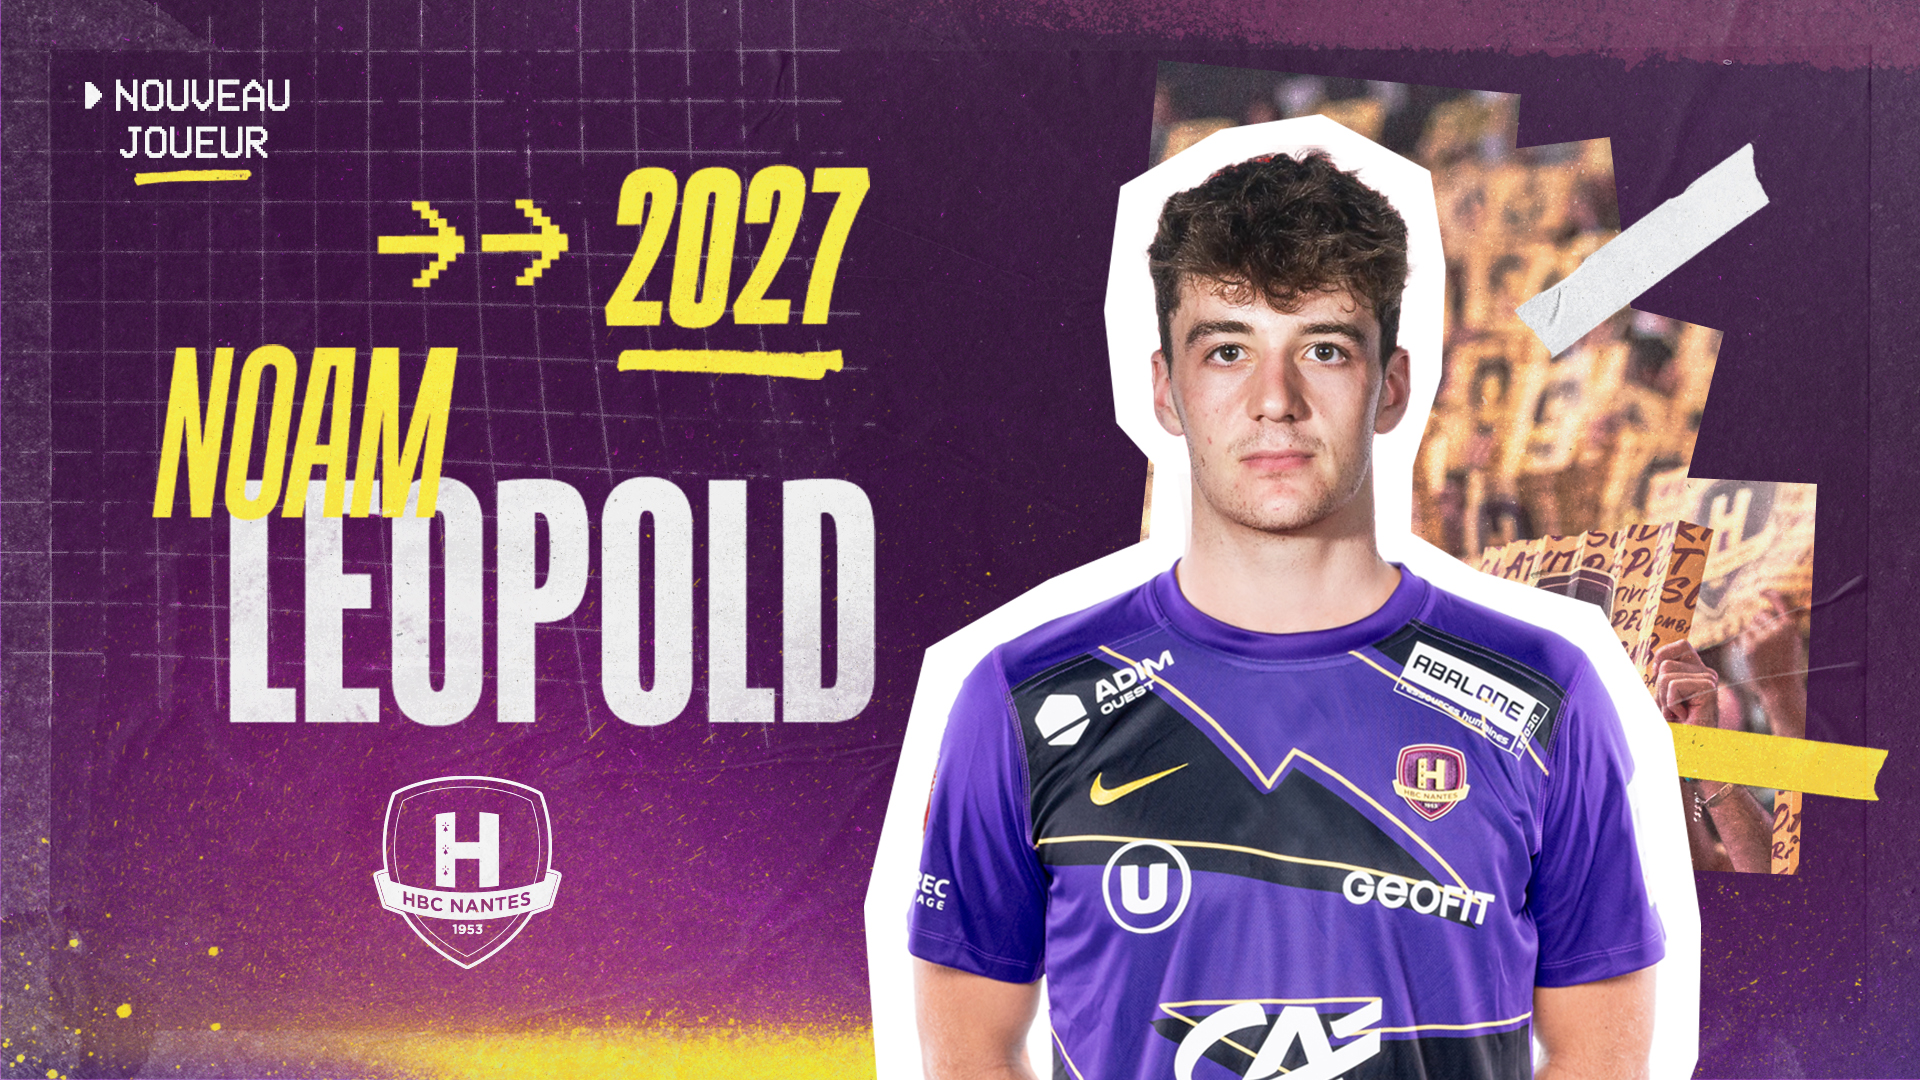 Noam Leopold au HBC Nantes jusqu'en 2027